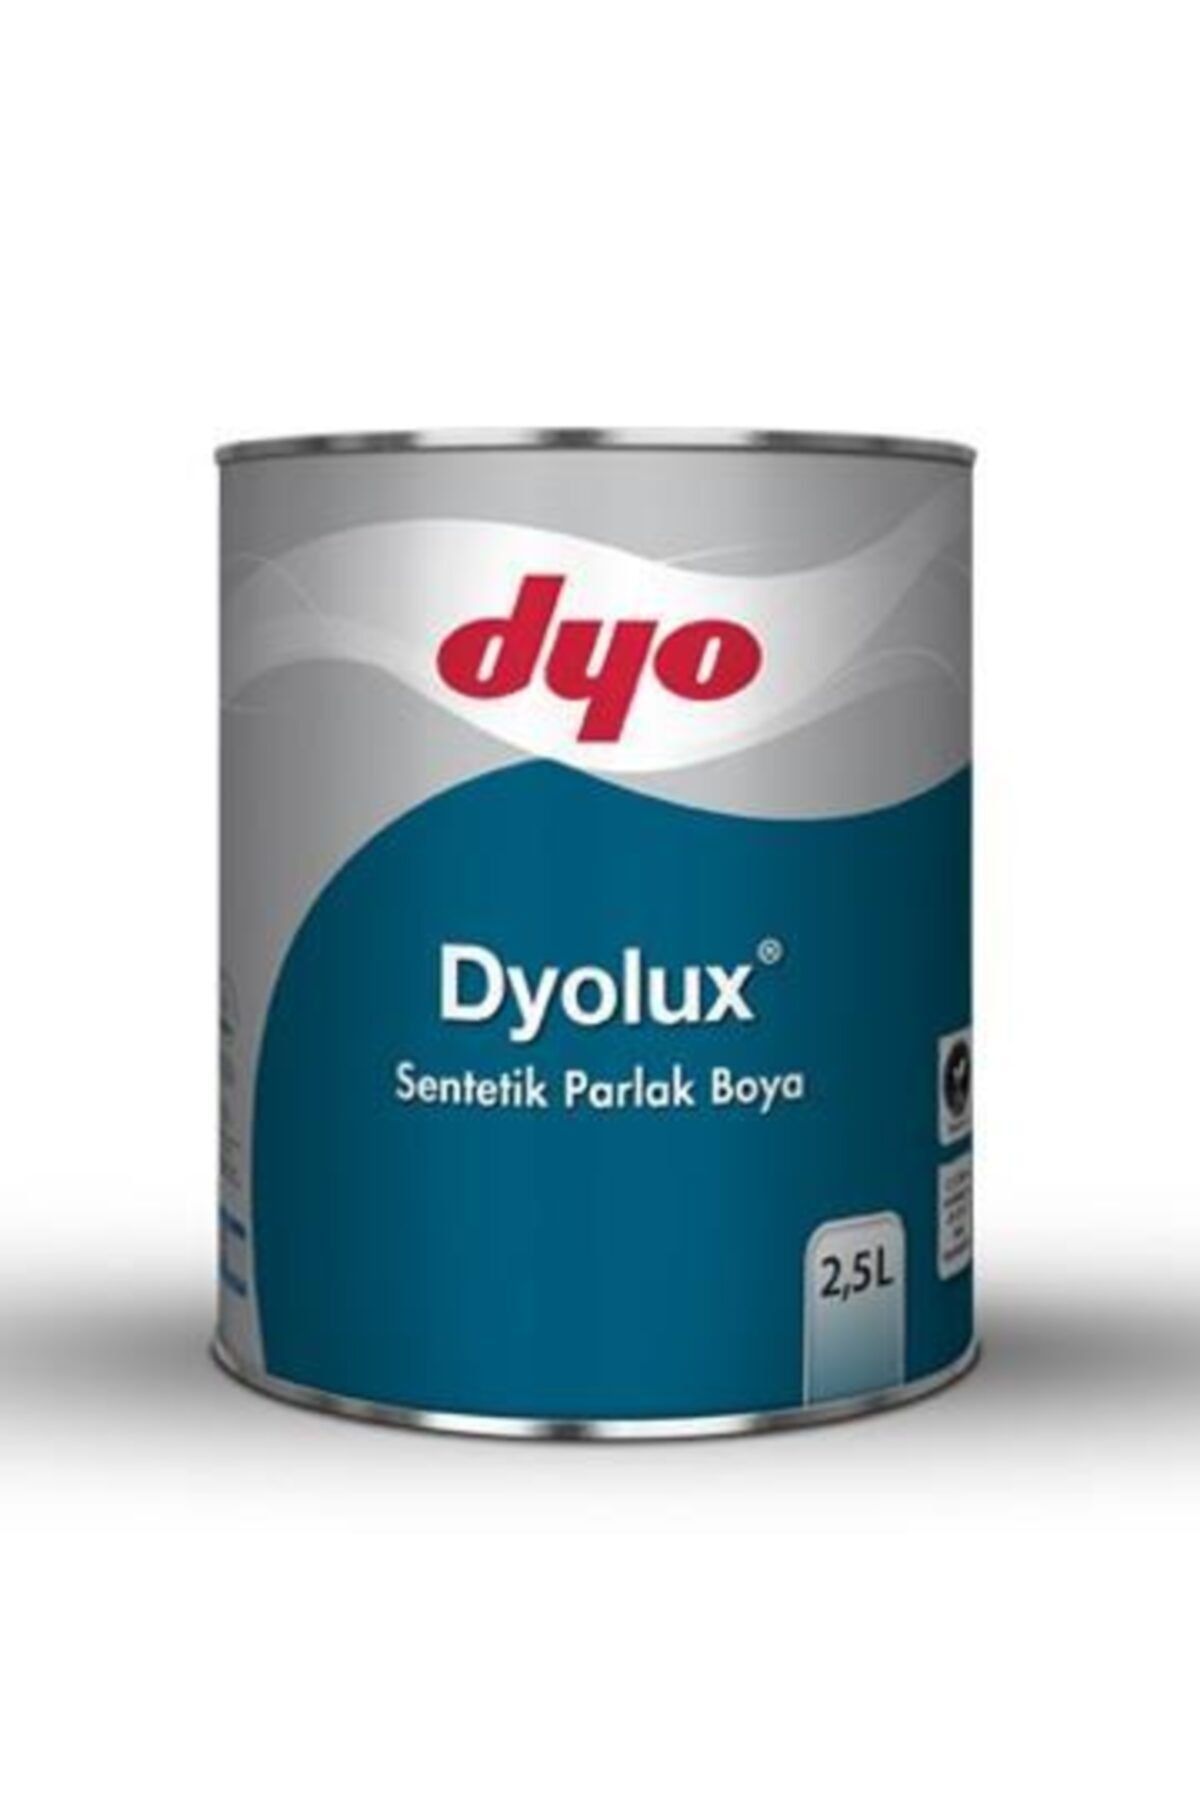 Dyo Lux Sentetik Parlak Boya Siyah-0.75lt